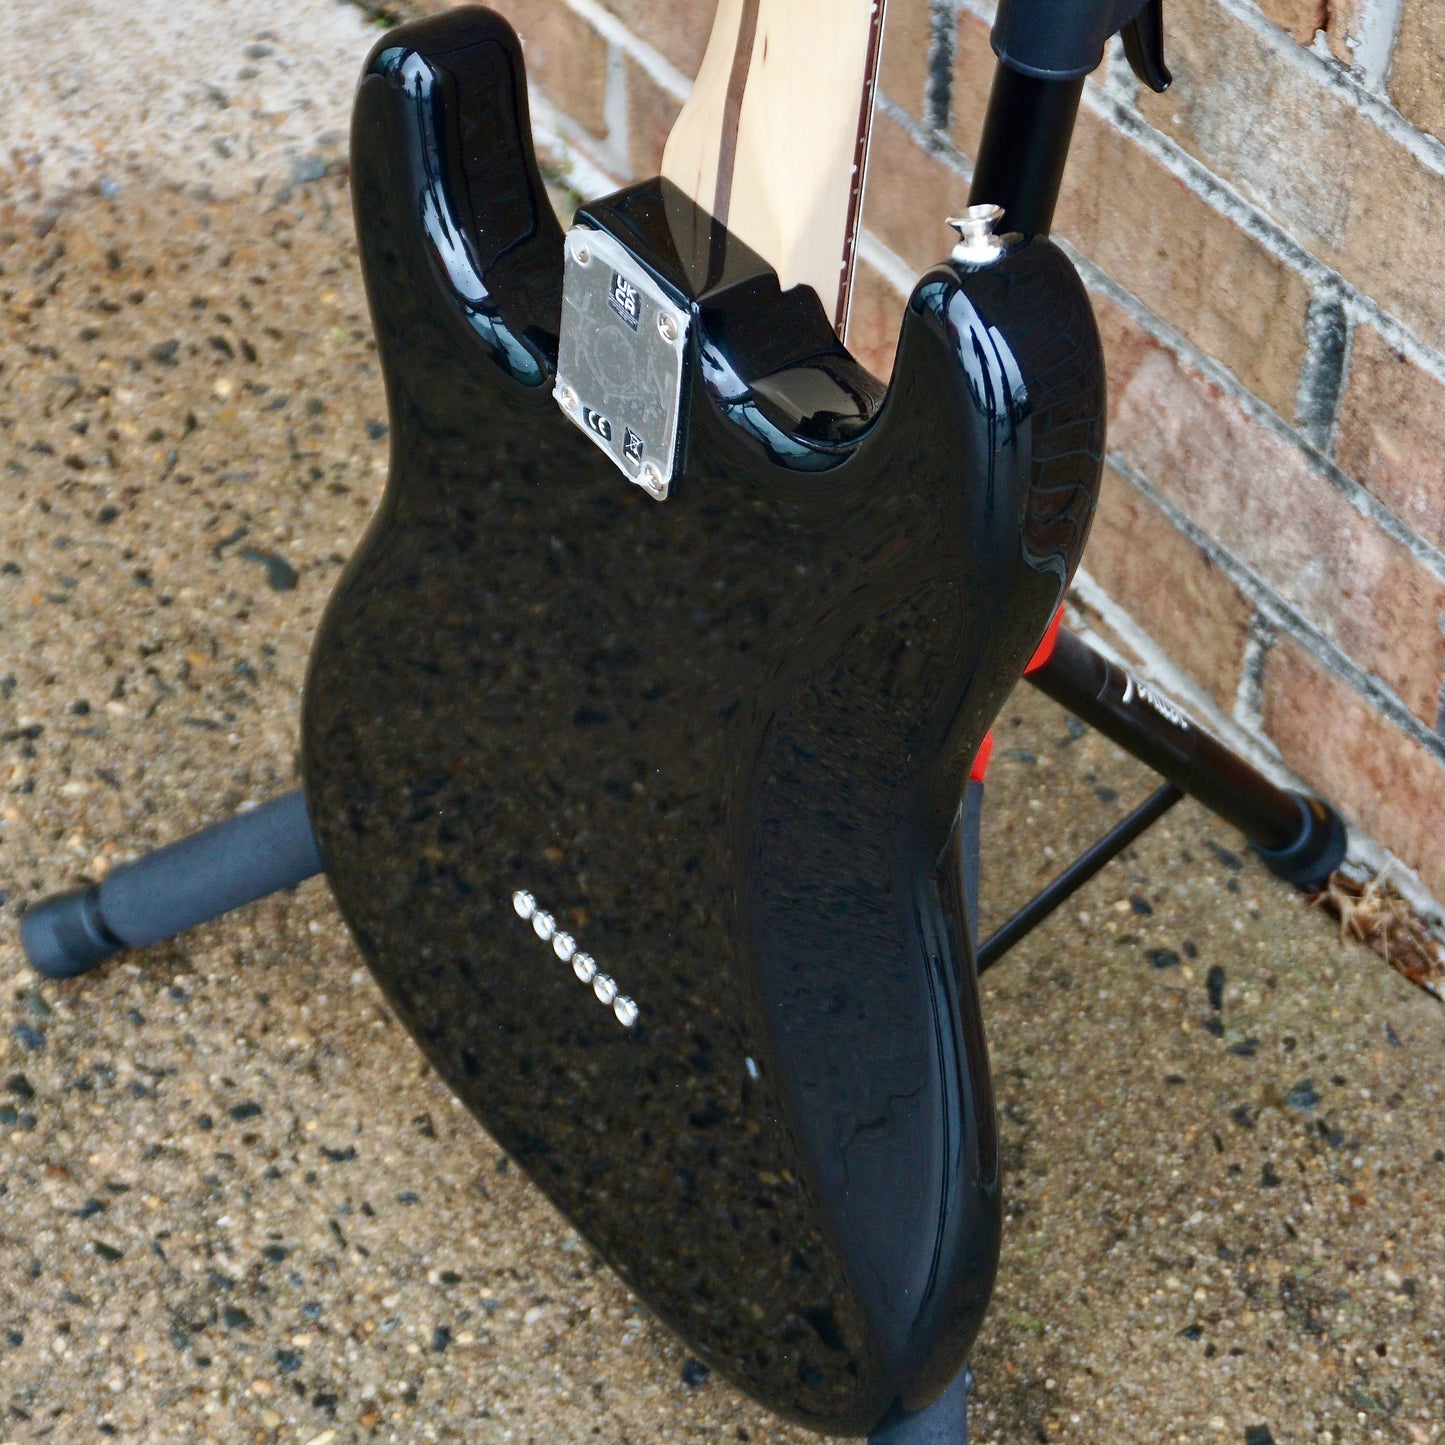 Fender Limited Edition Tom DeLonge Stratocaster Rosewood Fingerboard, Black